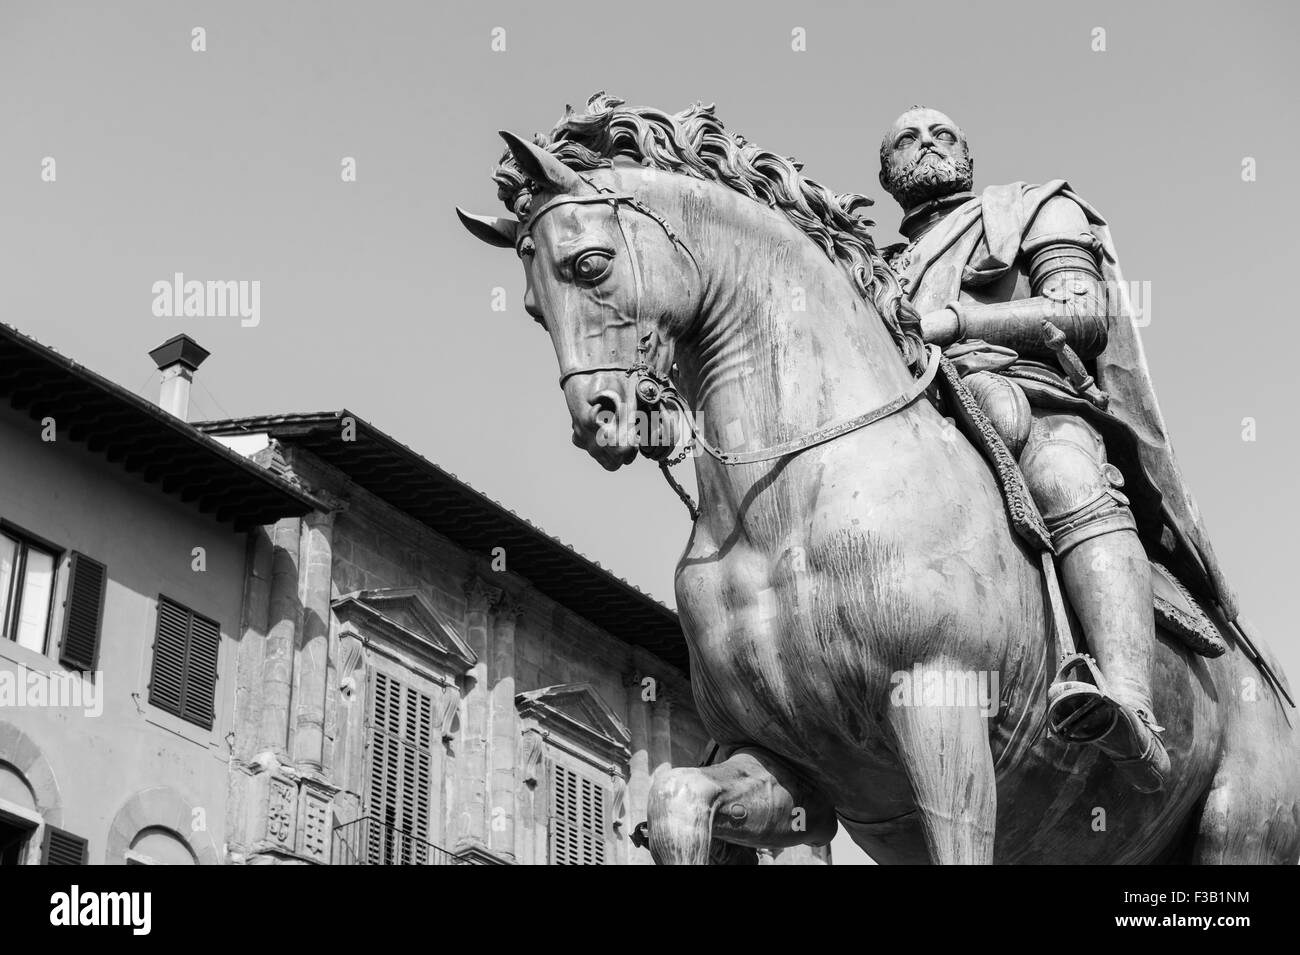 Bronze statue of Grand Duke Cosima I of Tuscany, Piazza della Signoria, Florence, Italy Stock Photo